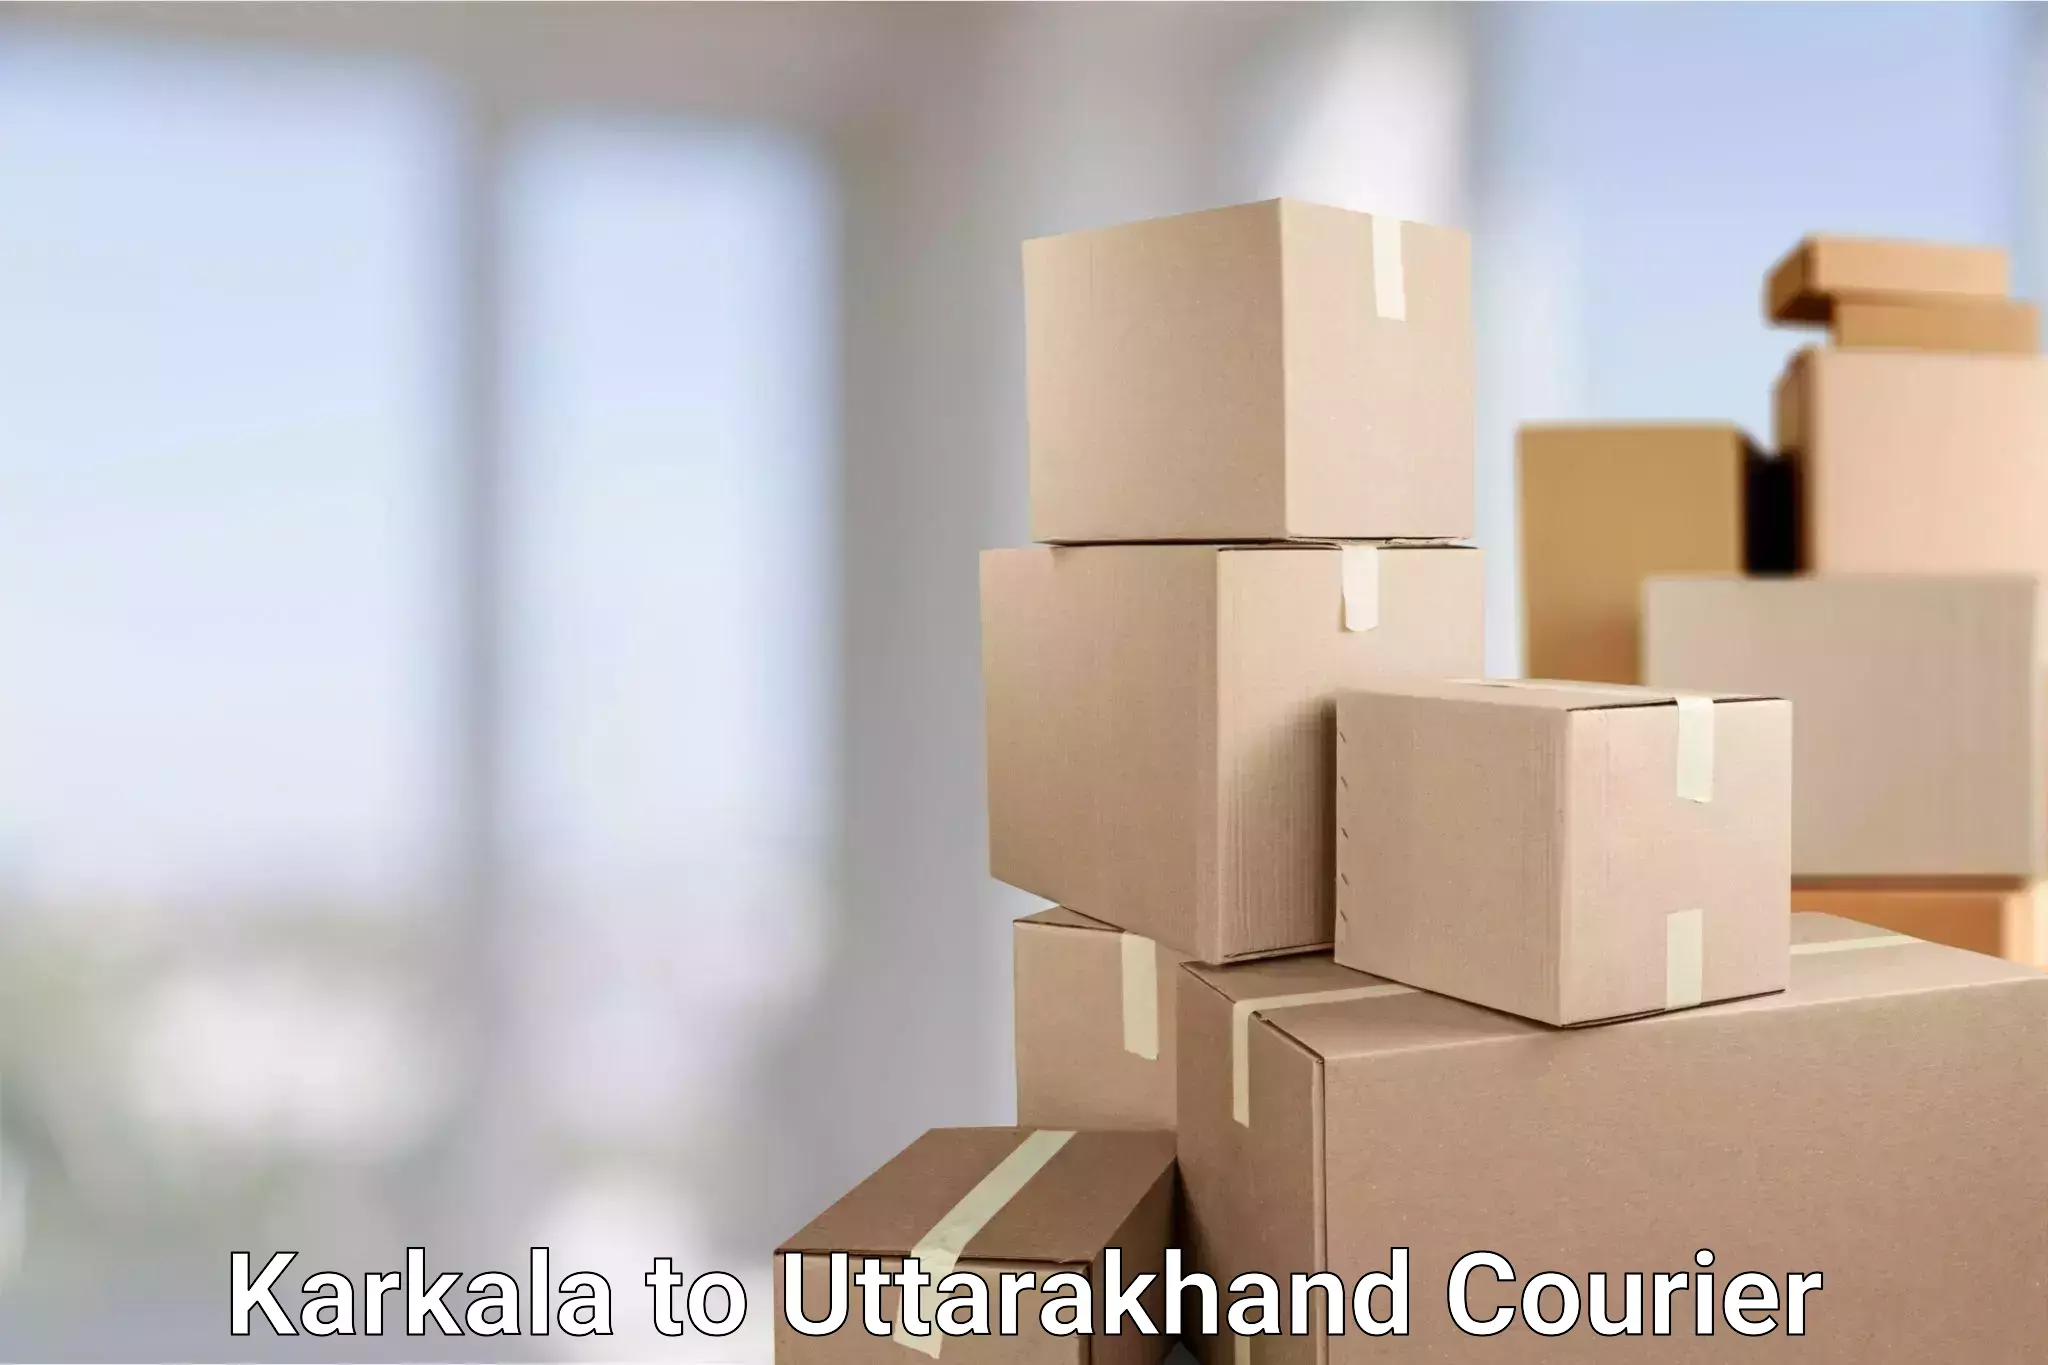 Express delivery solutions Karkala to Srinagar Pauri Garhwal